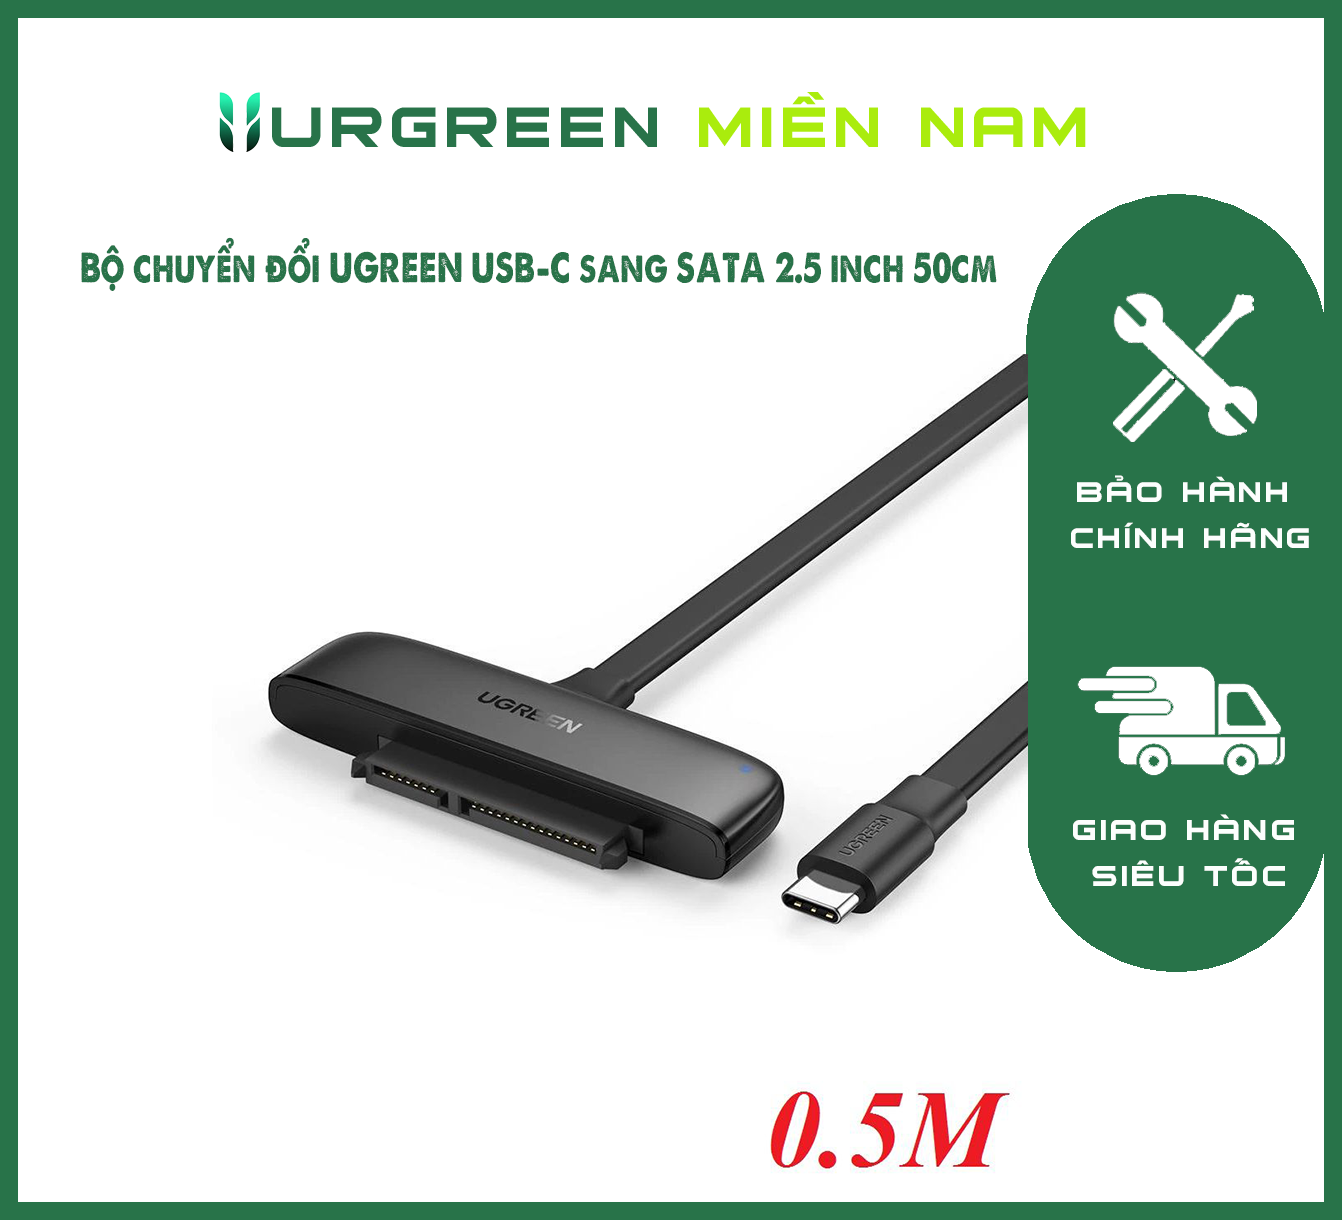 Bộ chuyển đổi UGREEN USB-C sang SATA 2.5 inch 50cm